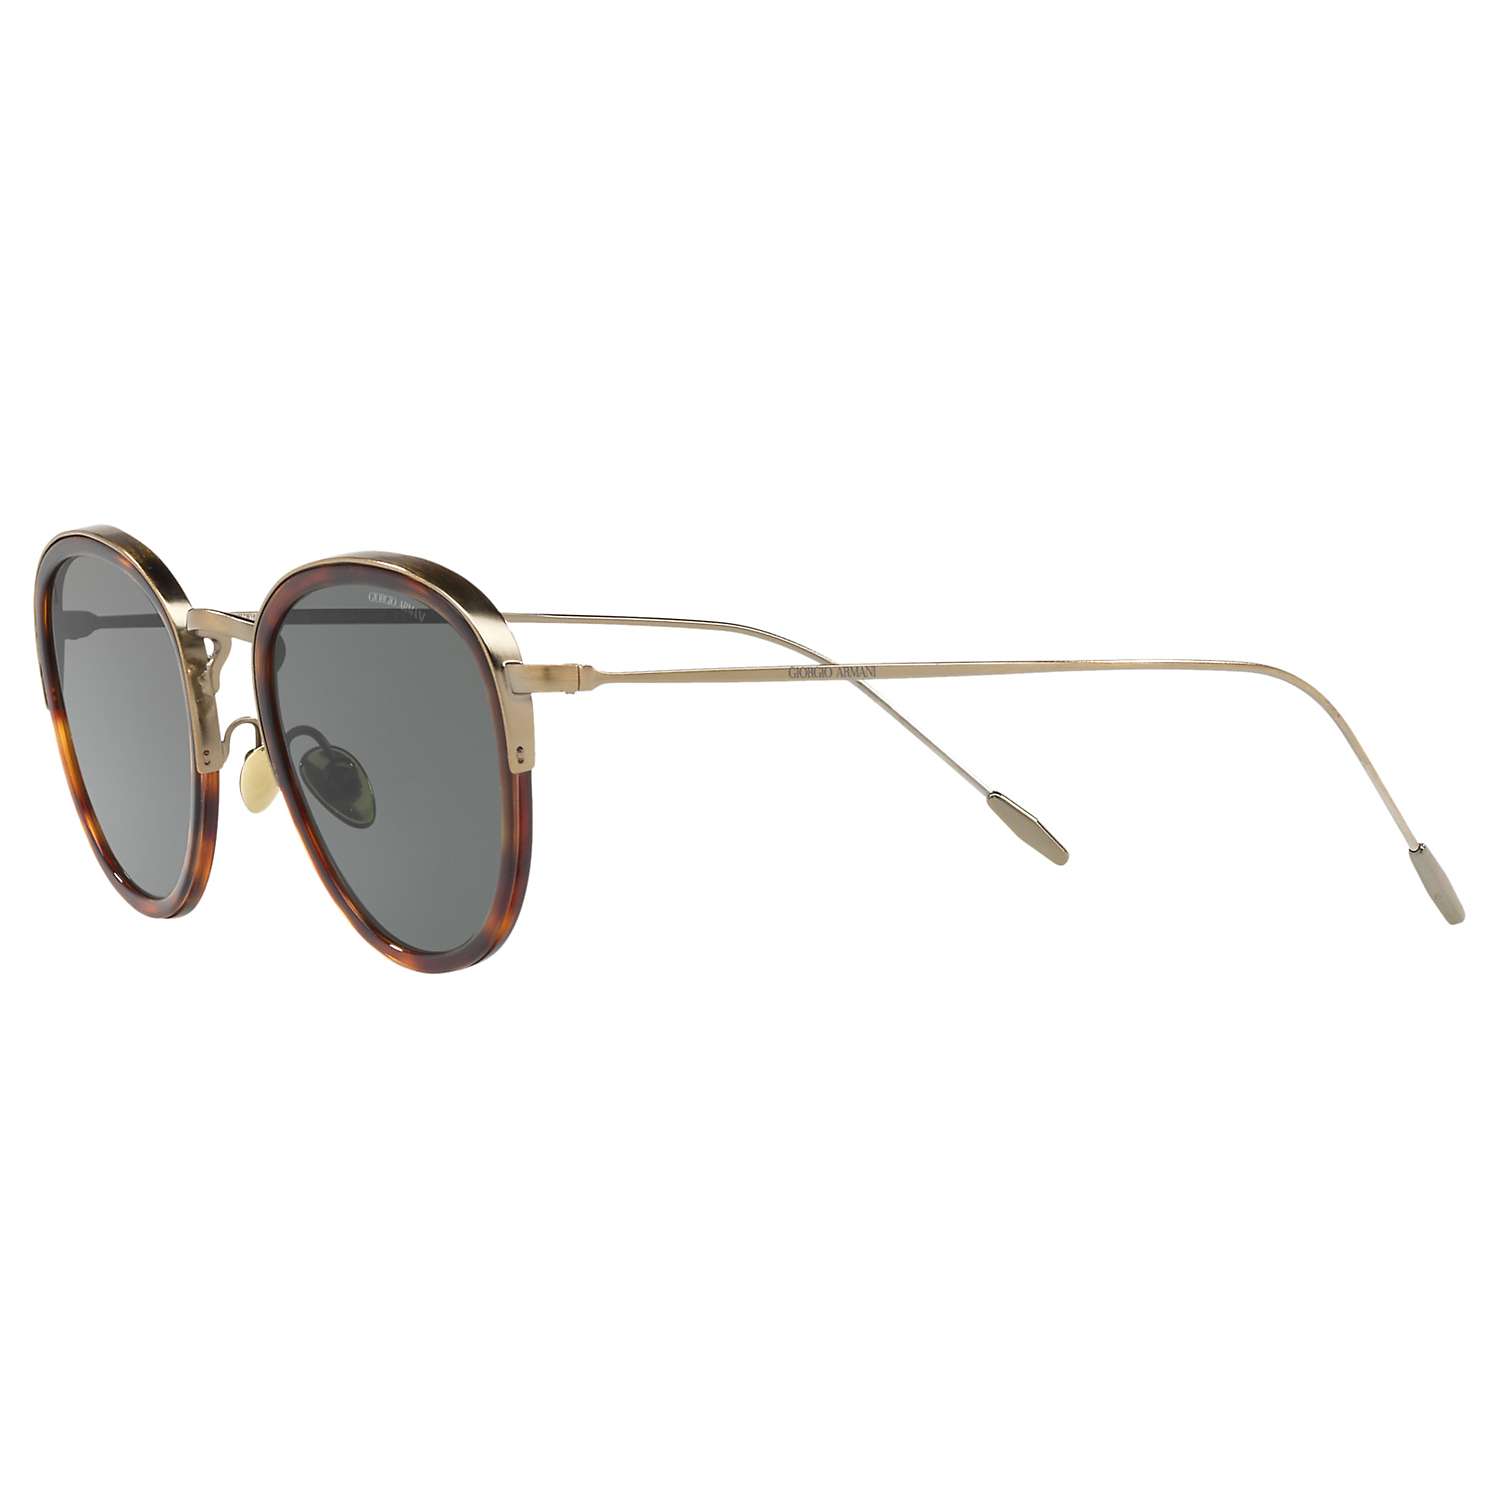 Buy Giorgio Armani AR6068 Men's Frames of Life Round Sunglasses Online at johnlewis.com